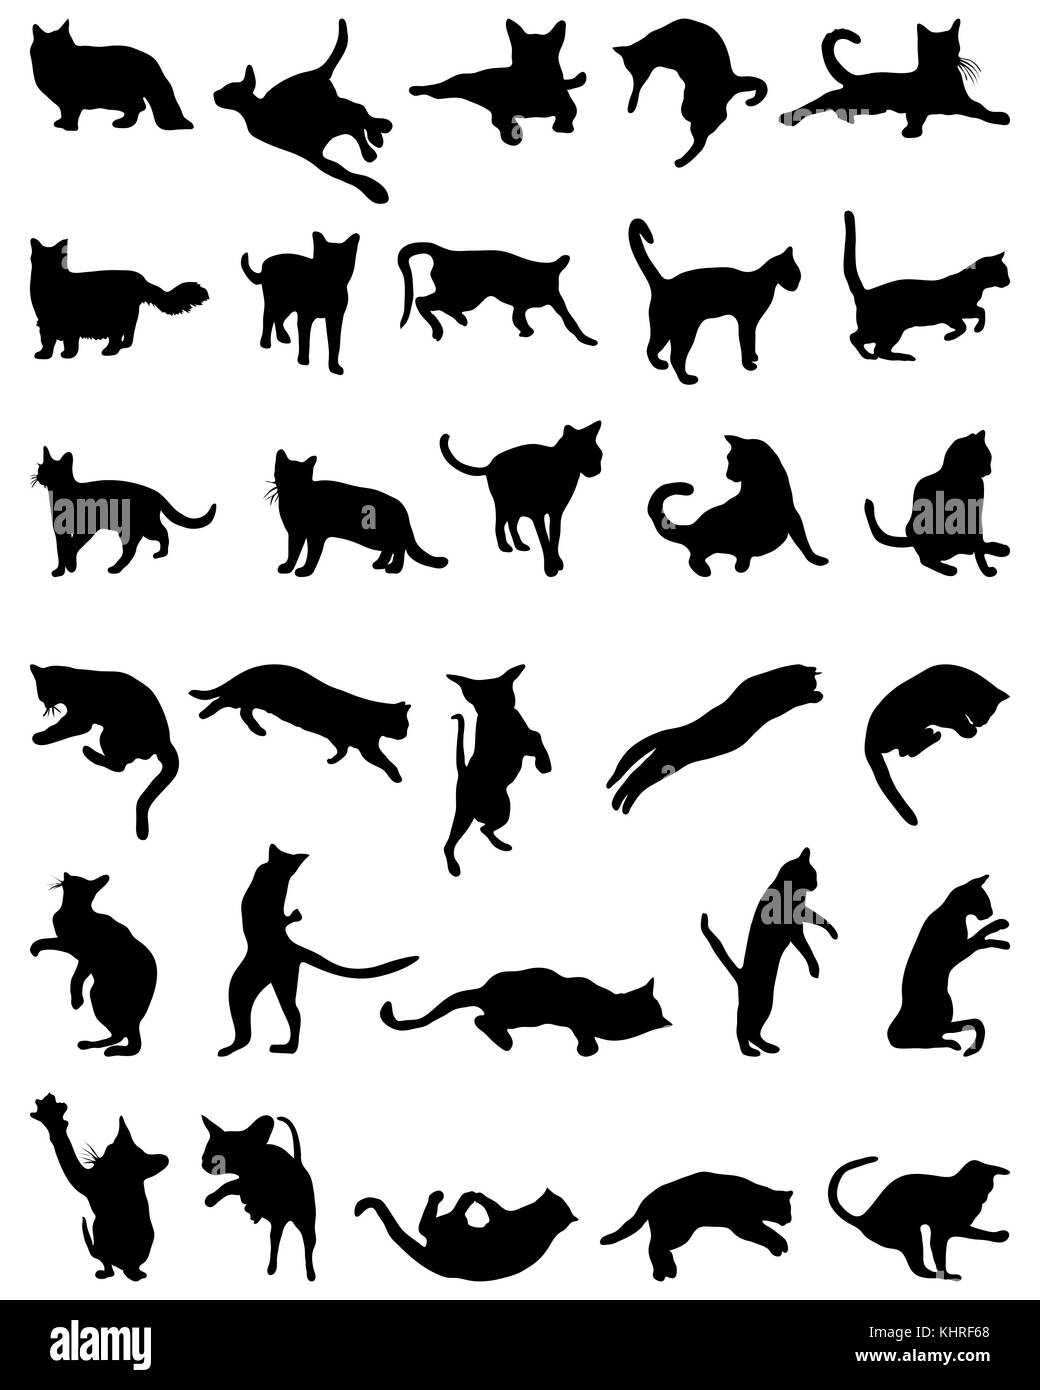 Silhouettes de chats noirs sur fond blanc Banque D'Images